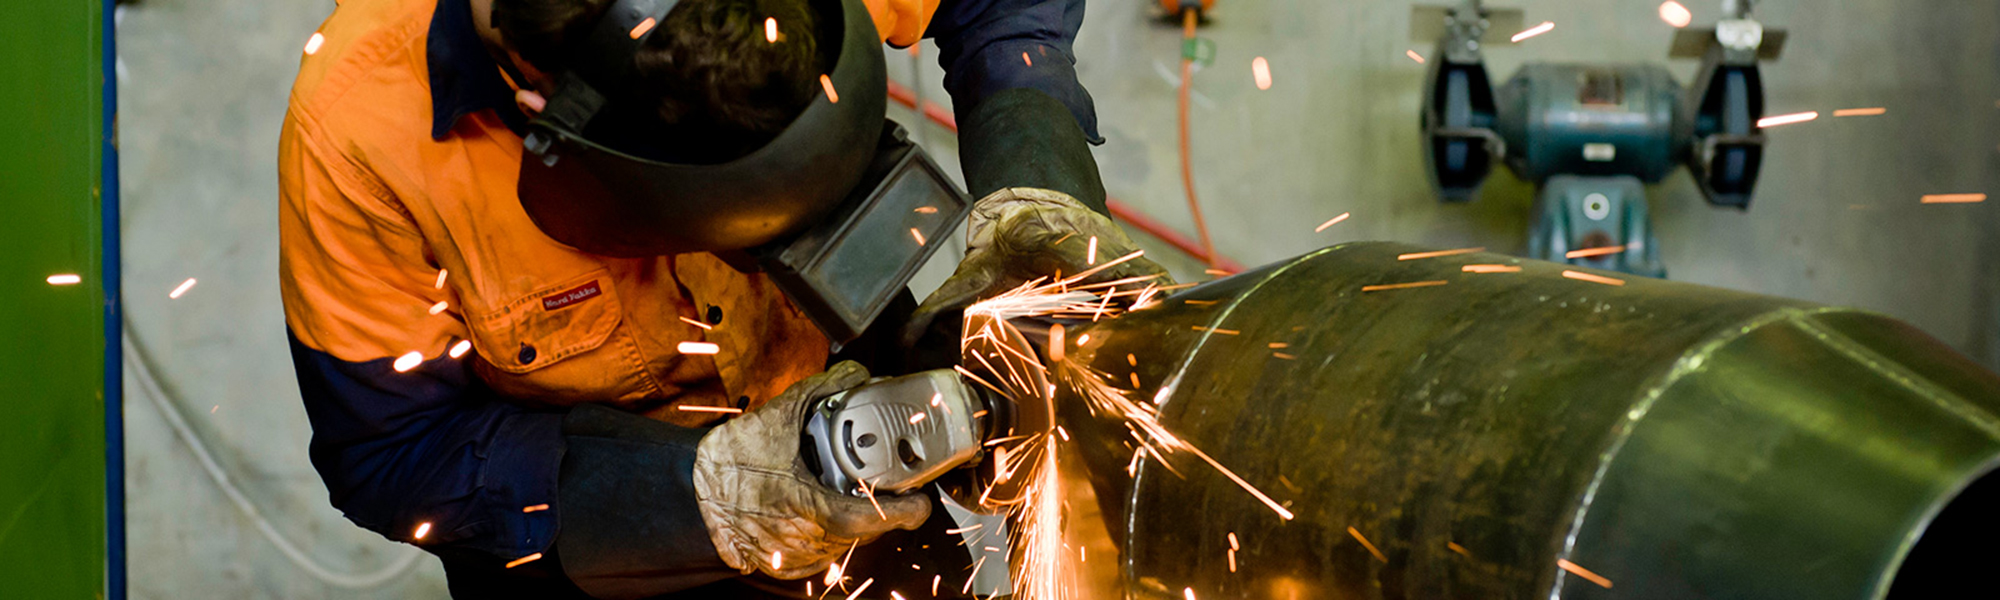 types of welding certifications